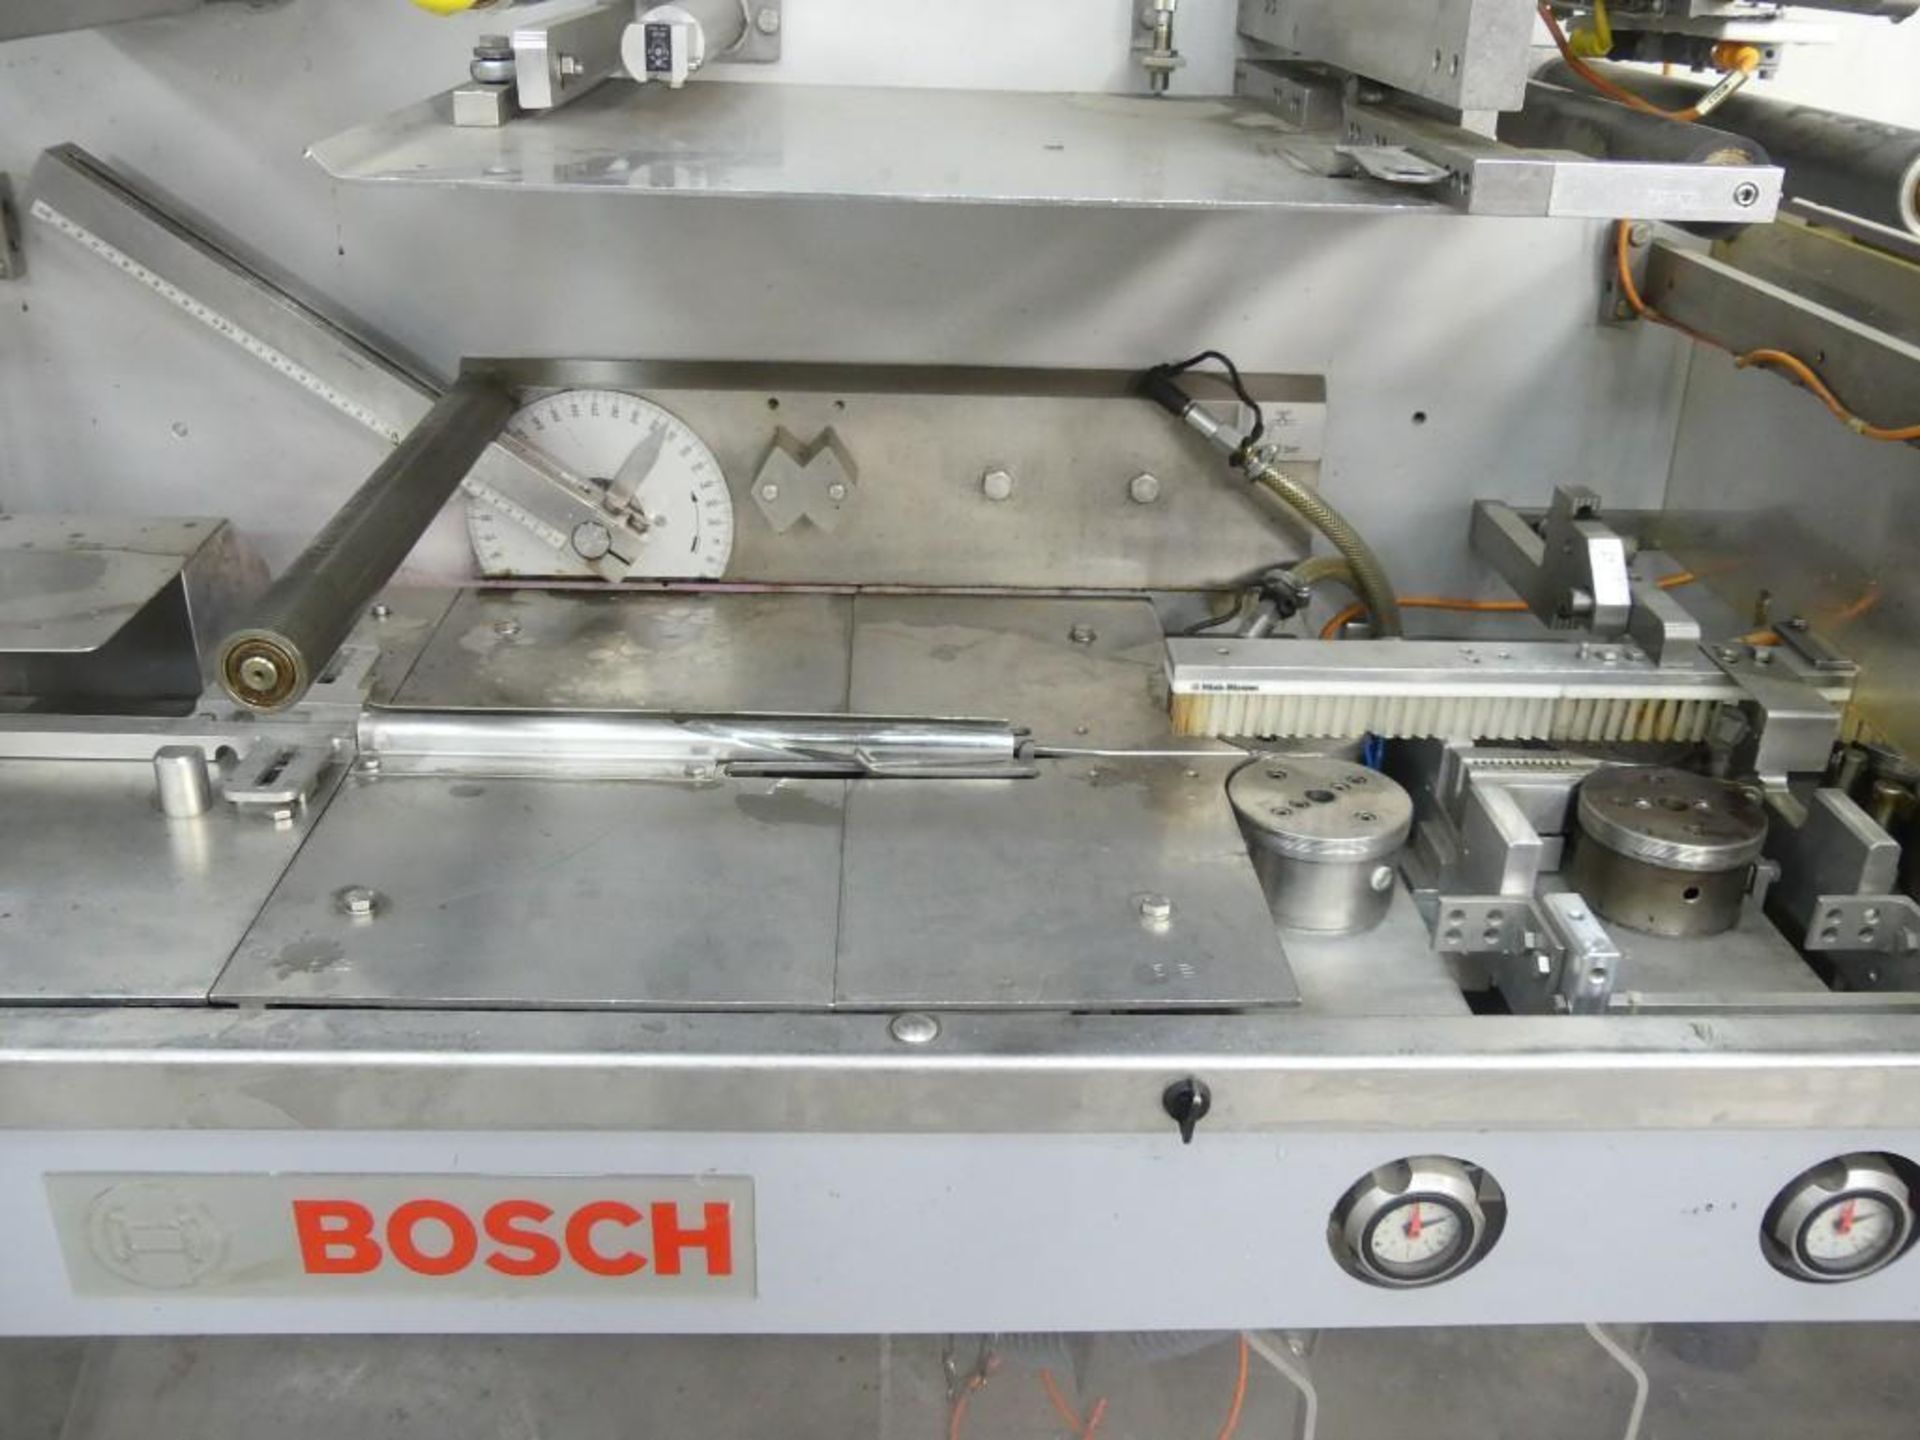 Bosch Sigpack HBM Flow Wrapper Print Registered - Image 12 of 27